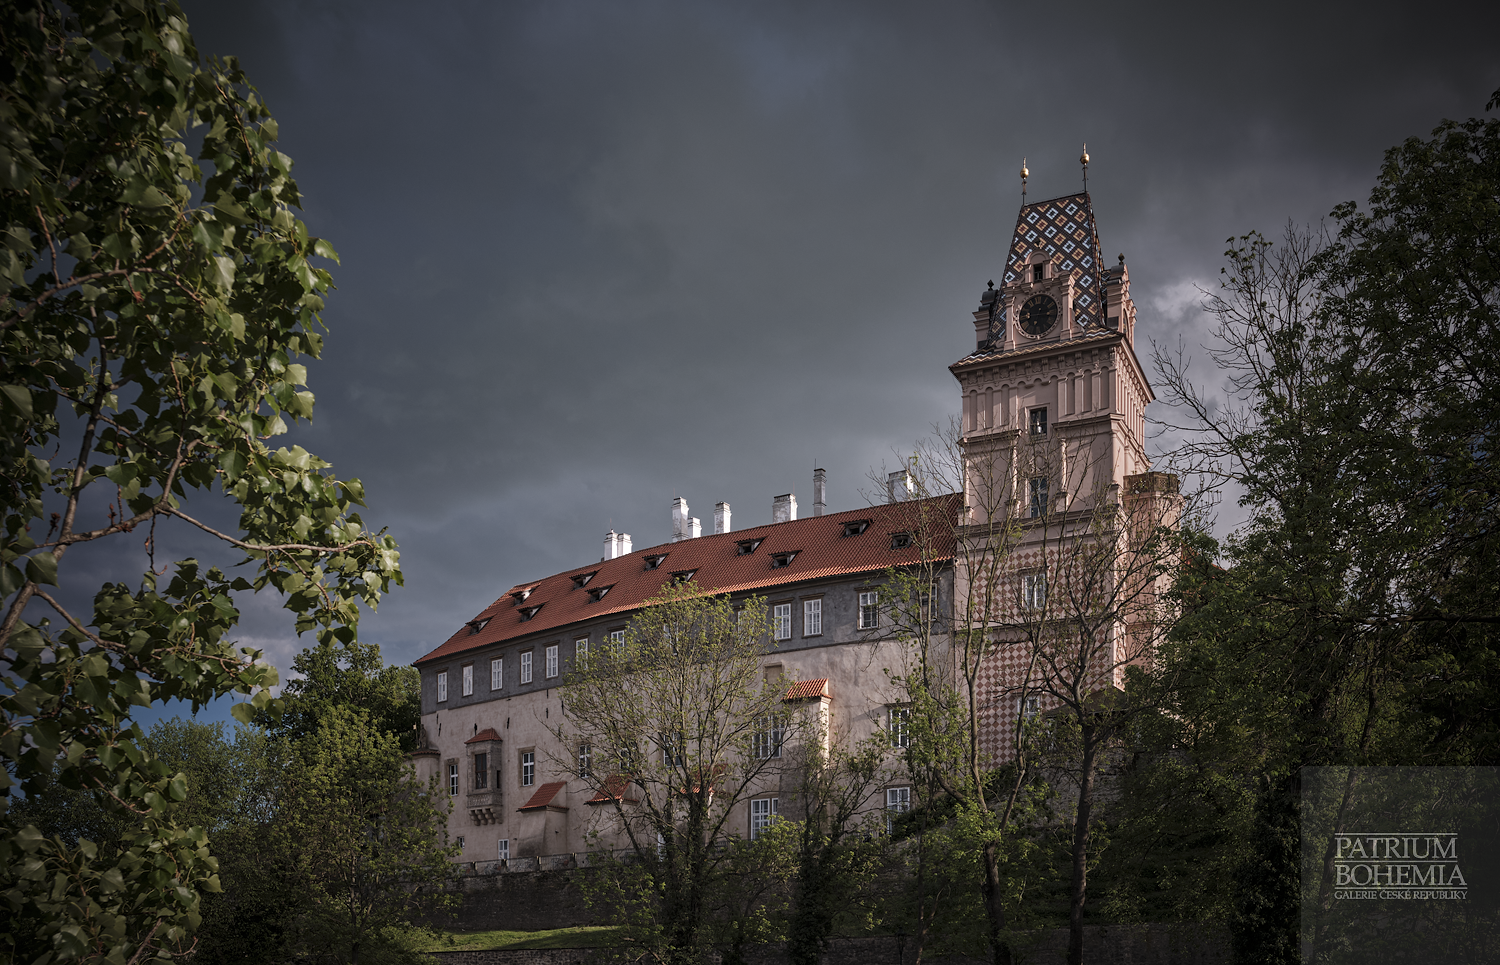 Jižní průčelí zámku Brandýs nad Labem.